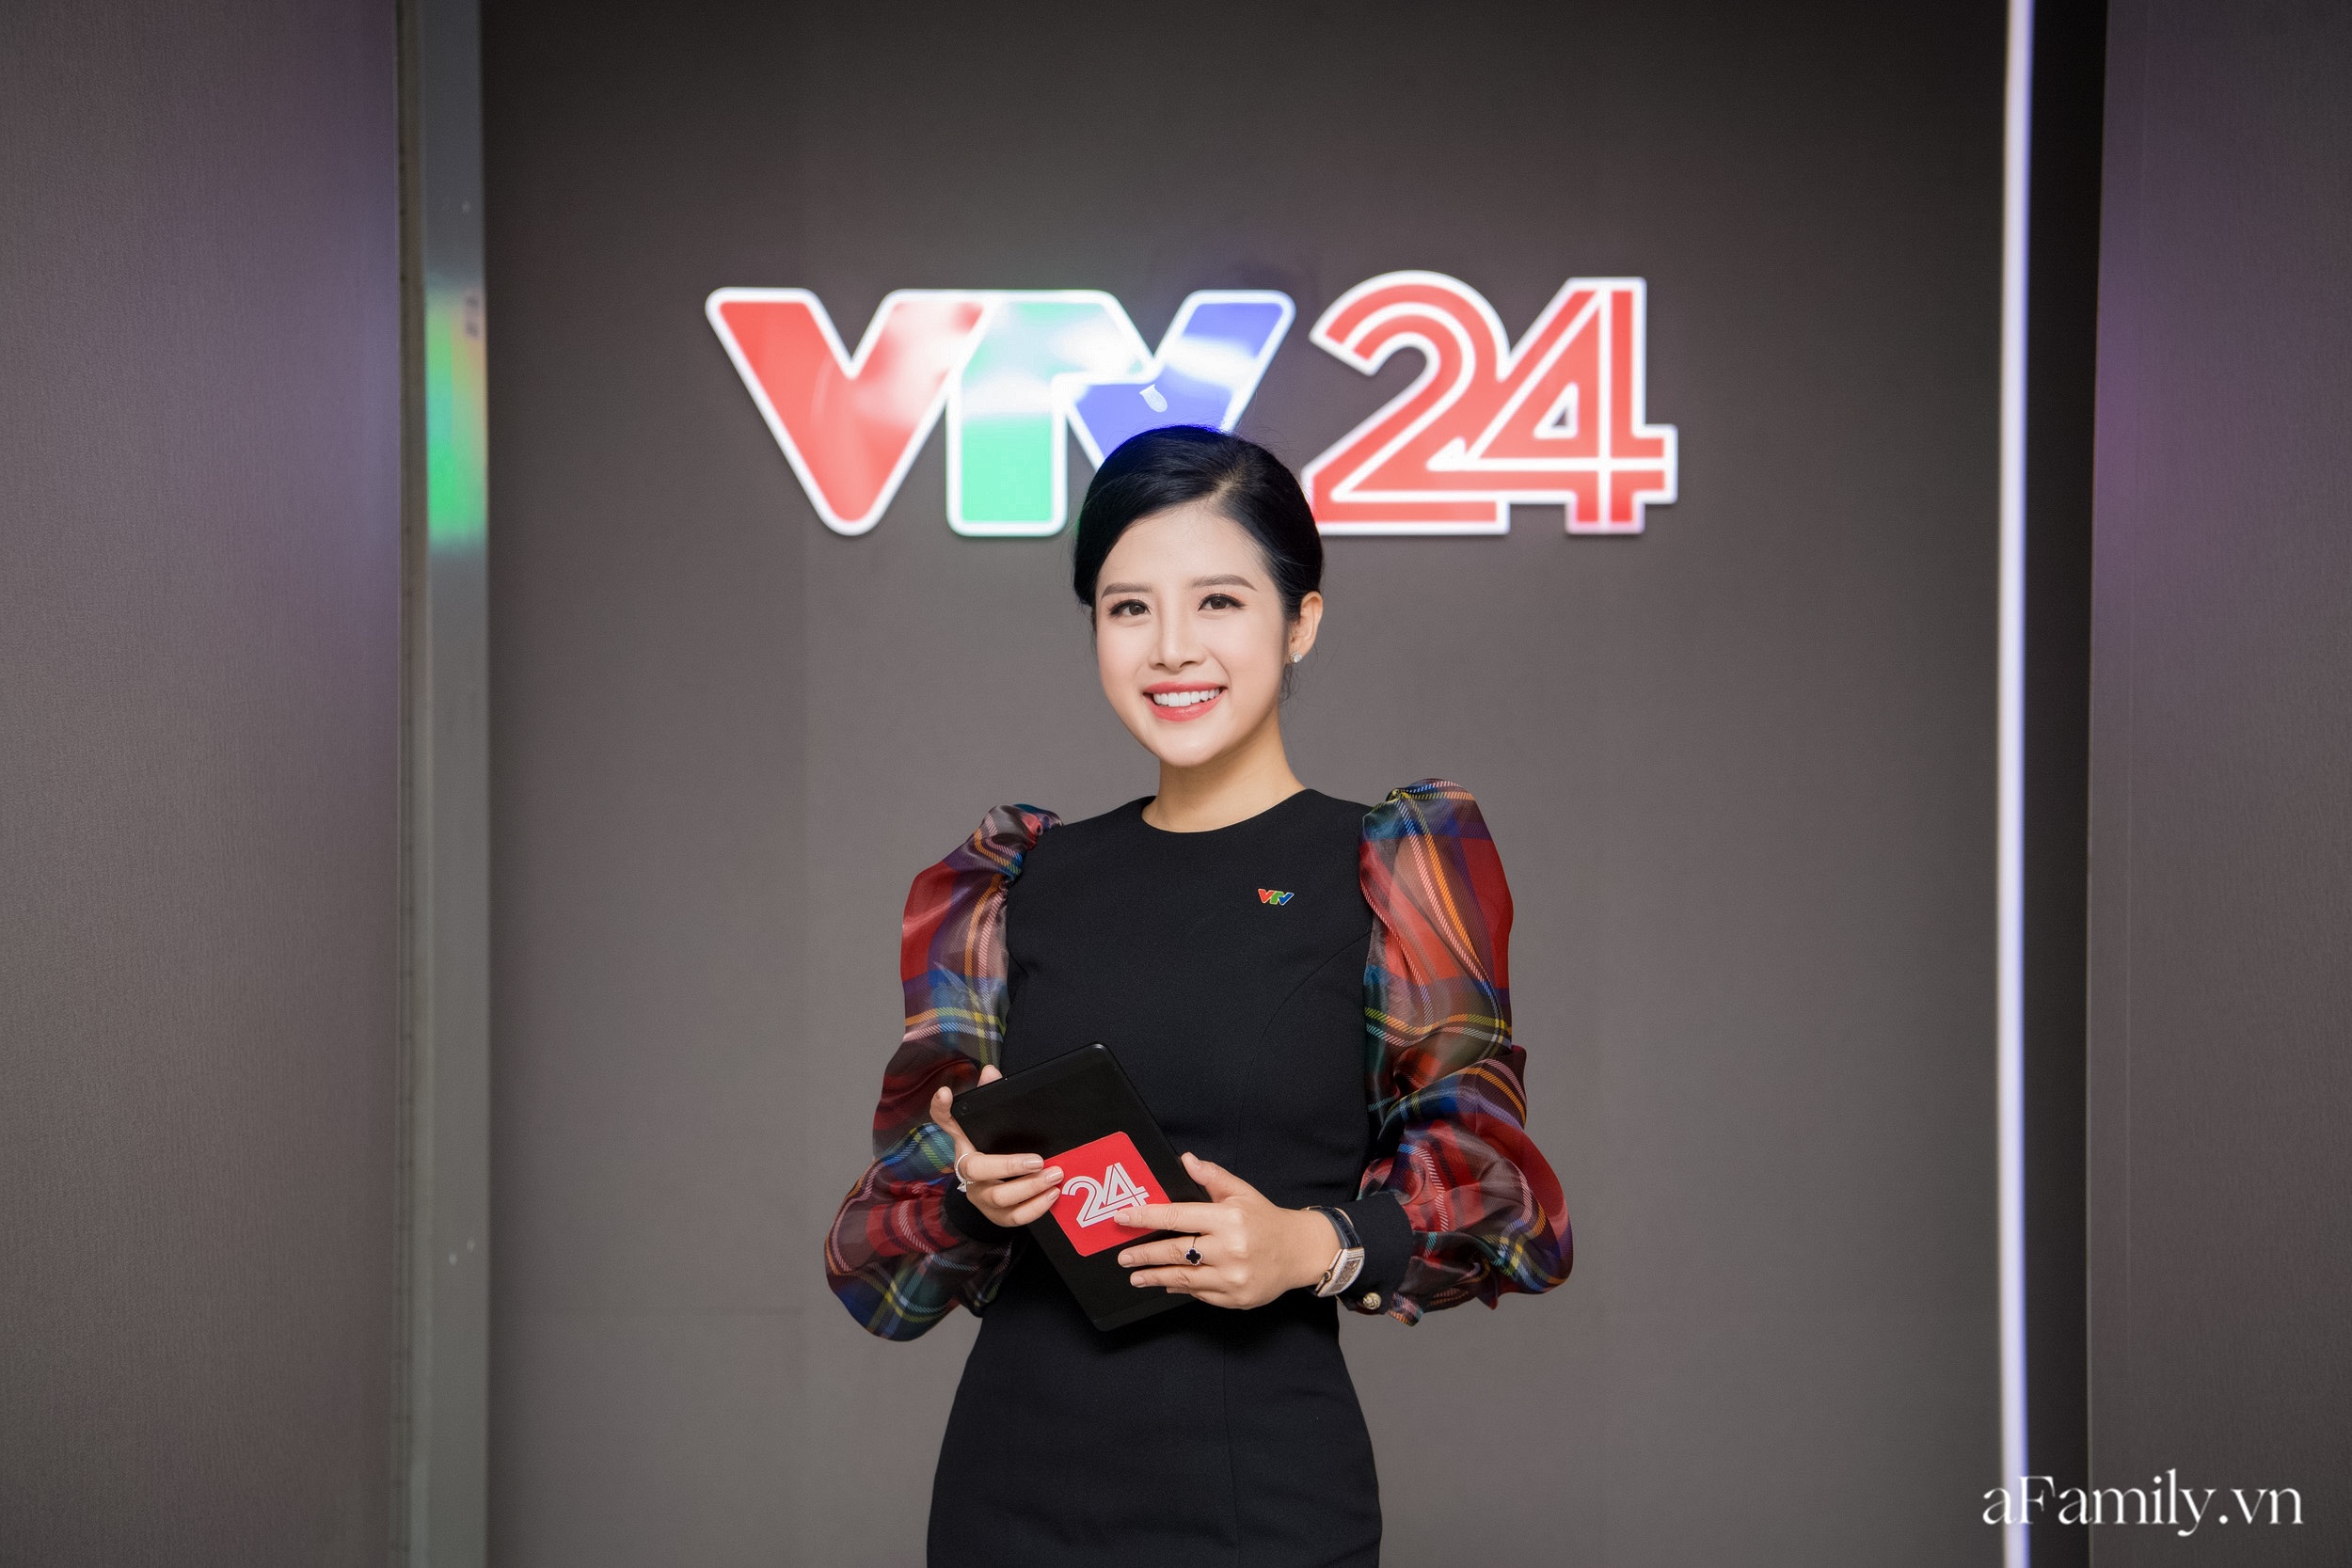 Hậu trường đi dẫn của Hải Vân - nữ MC xinh đẹp nhất nhì VTV24: 1 ngày thay gần chục bộ đồ, đóng máy quay lúc 6h sáng - Ảnh 1.